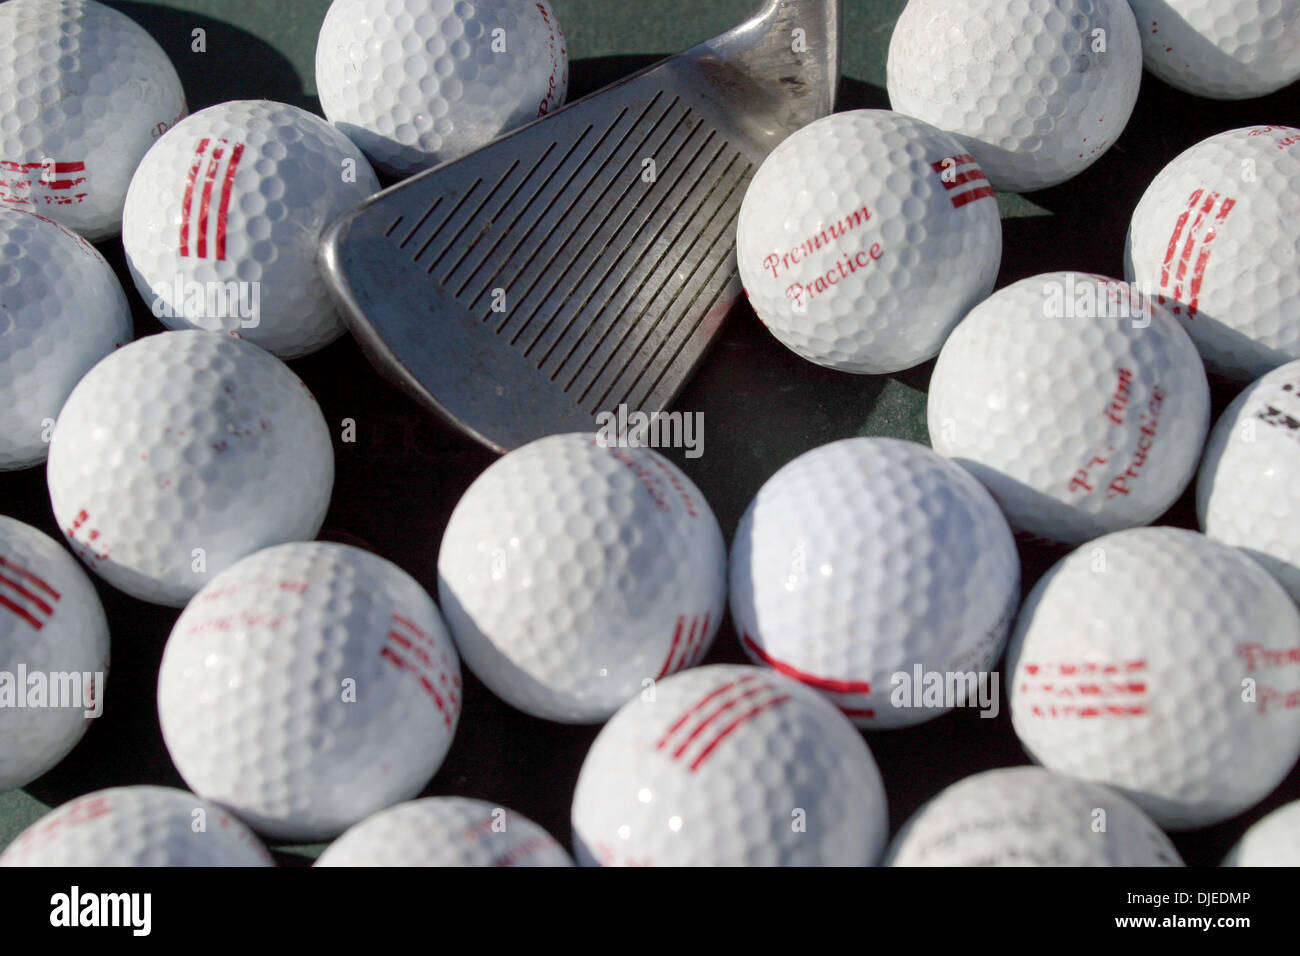 Sep 01, 2004; Los Angeles, Kalifornien, USA; Ein Golfclub und Praxis Ball in einem der vielen driving Ranges in Südkalifornien. Spiel des Golfs. Stockfoto